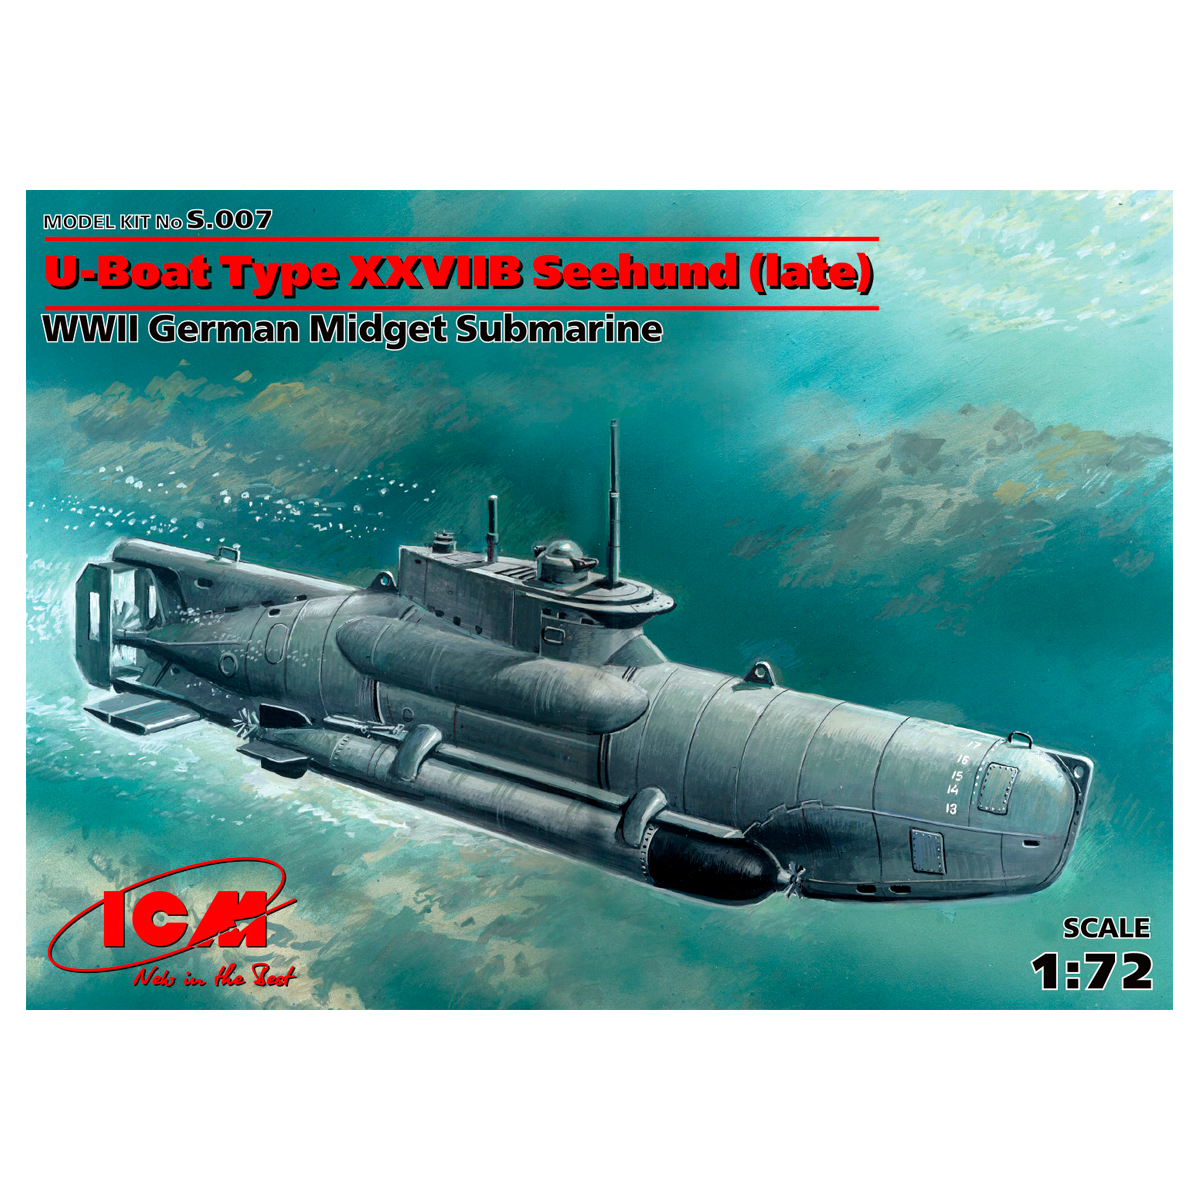 U-Boat Type XXVIIB “Seehund” (late), WWII German Midget Submarine 1/72